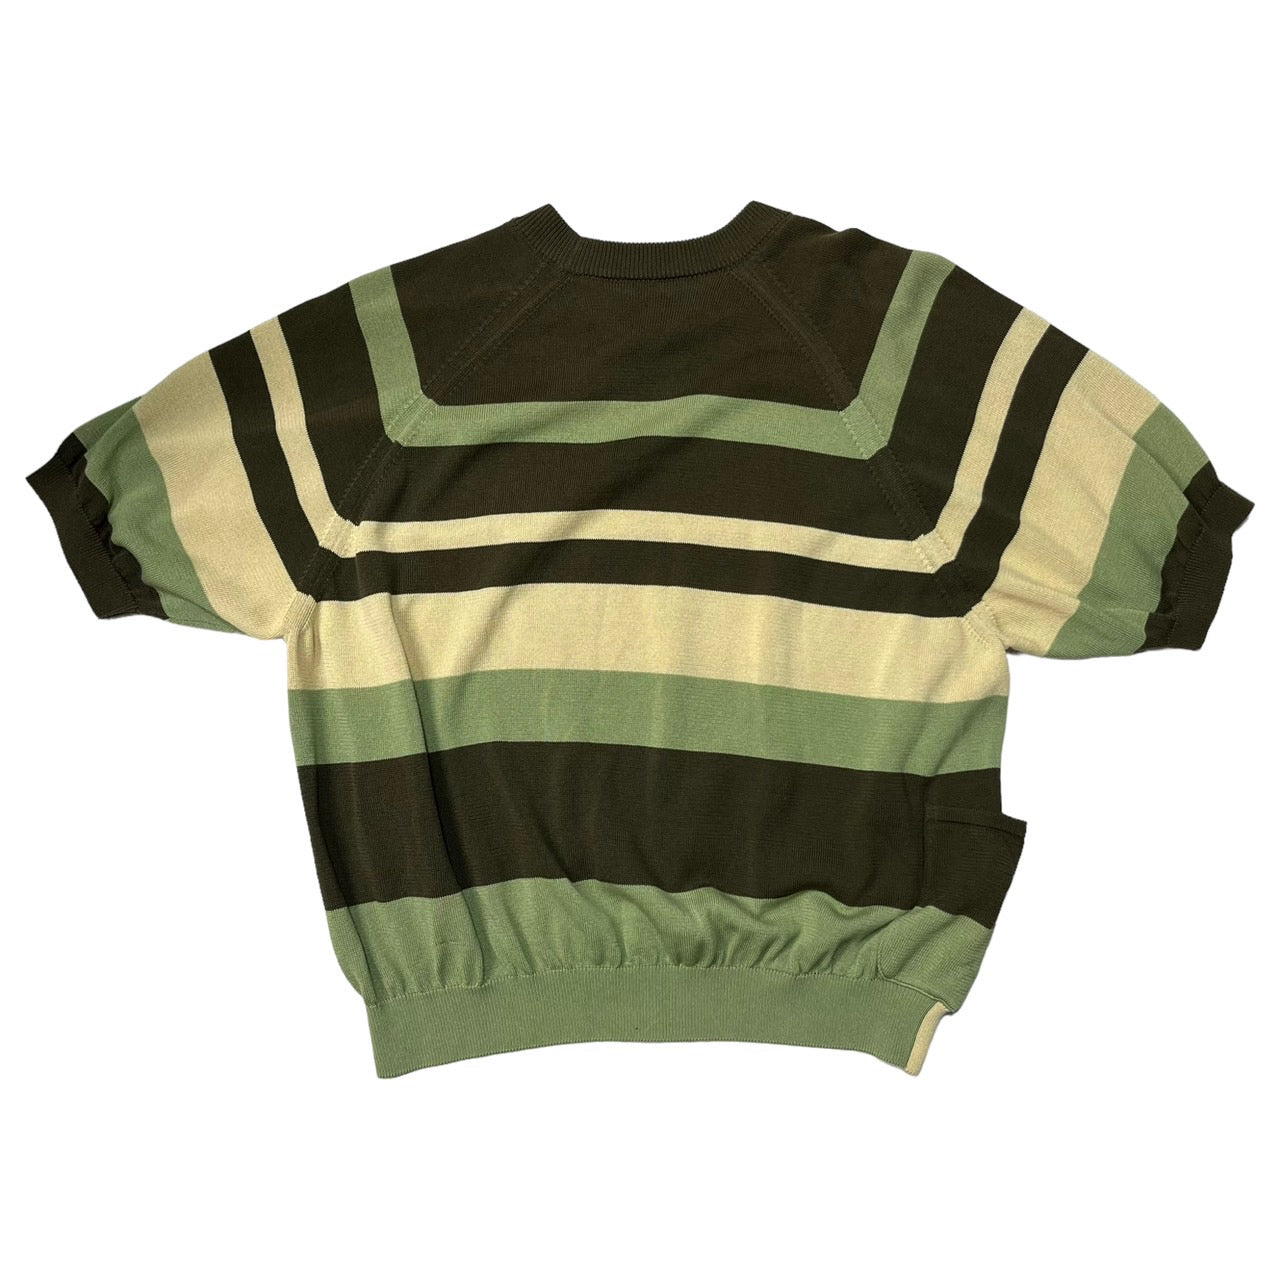 SUNSEA(サンシー) 20SS CLIFs Border Sweater/ボーダーセーター/半袖 20S51 SIZE 2(M) ベージュ×カーキ×ライトグリーン